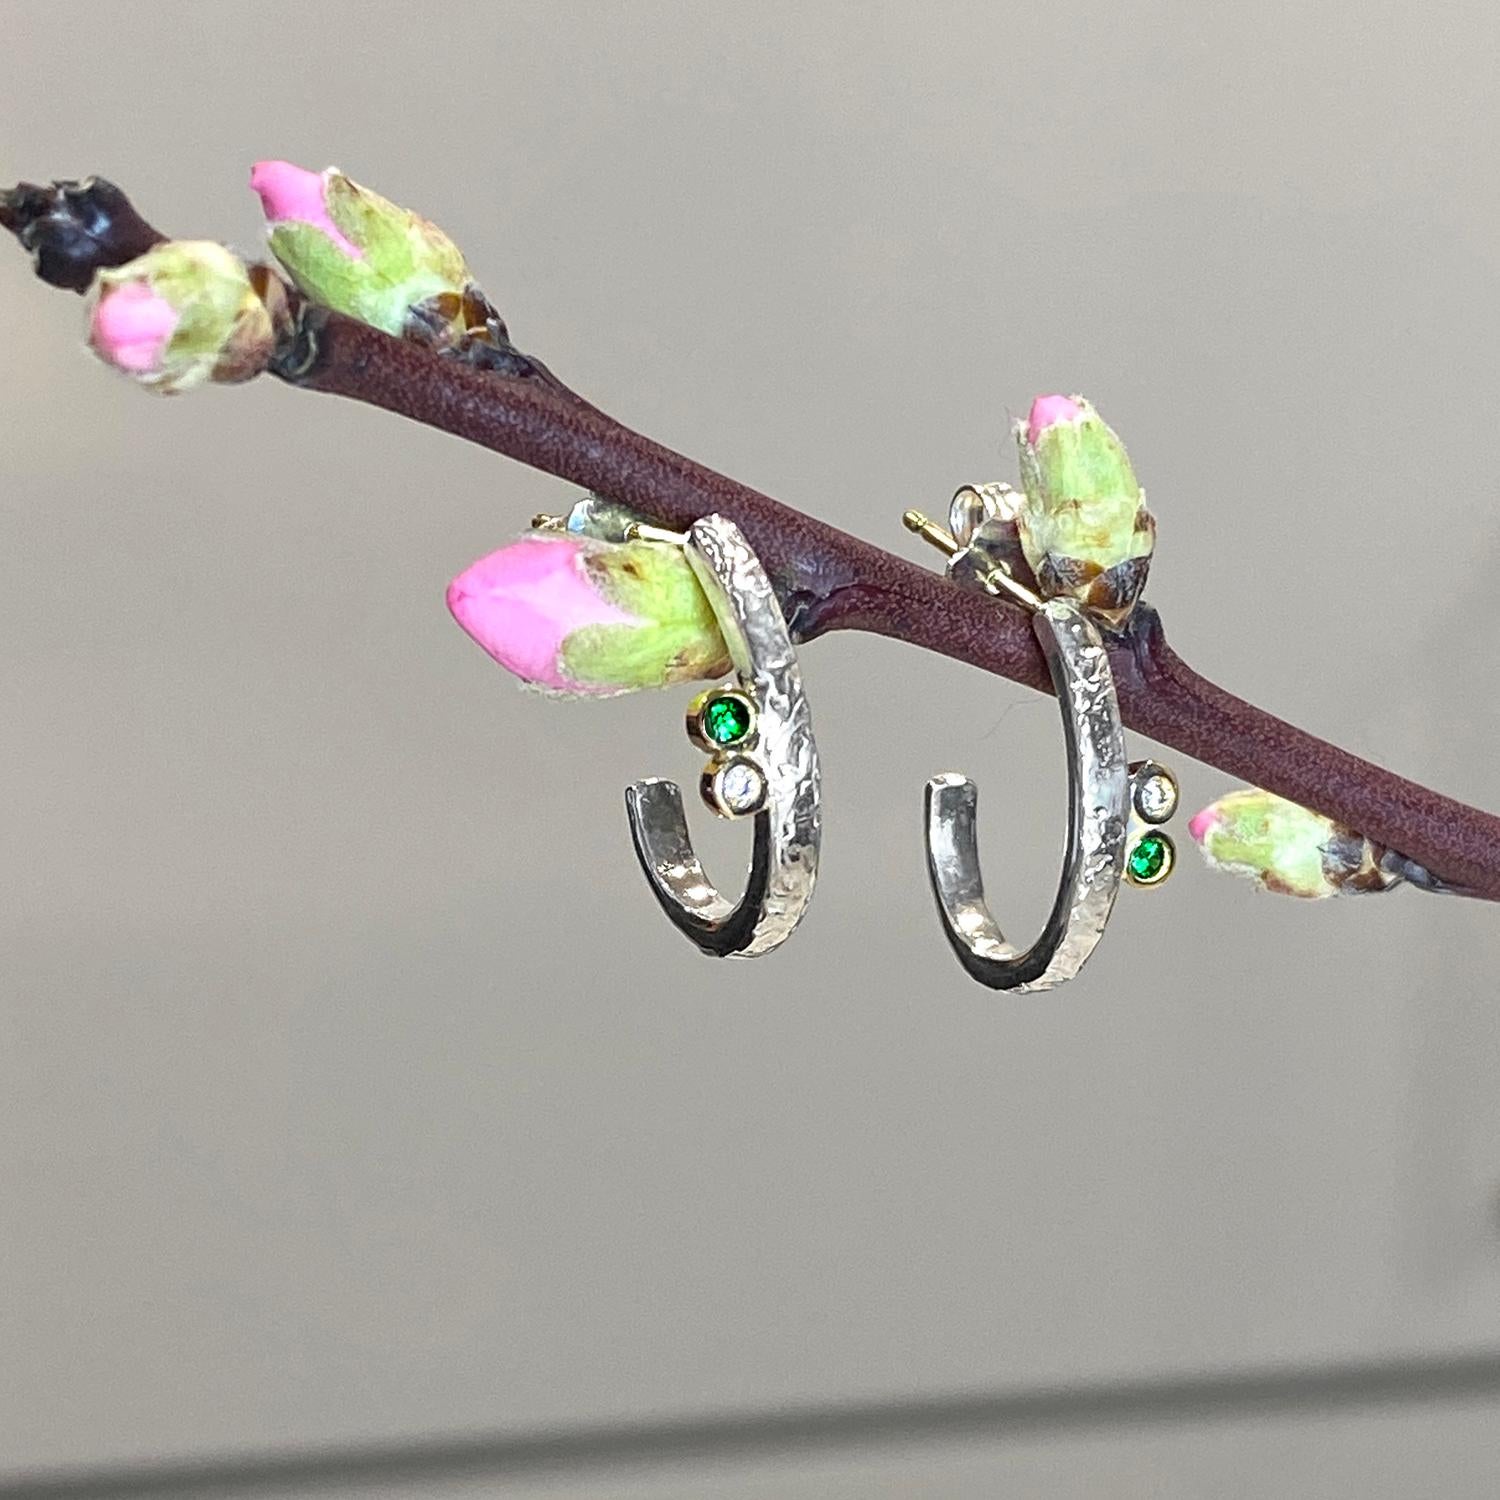 Les anneaux contemporains Lyla de Keiko Mita sont fabriqués à la main en argent sterling et rehaussés de diamants de 0,02 carat (poids total) et de grenats verts de 0,06 carat (poids total). Les anneaux texturés ont des poteaux en or 14 carats avec